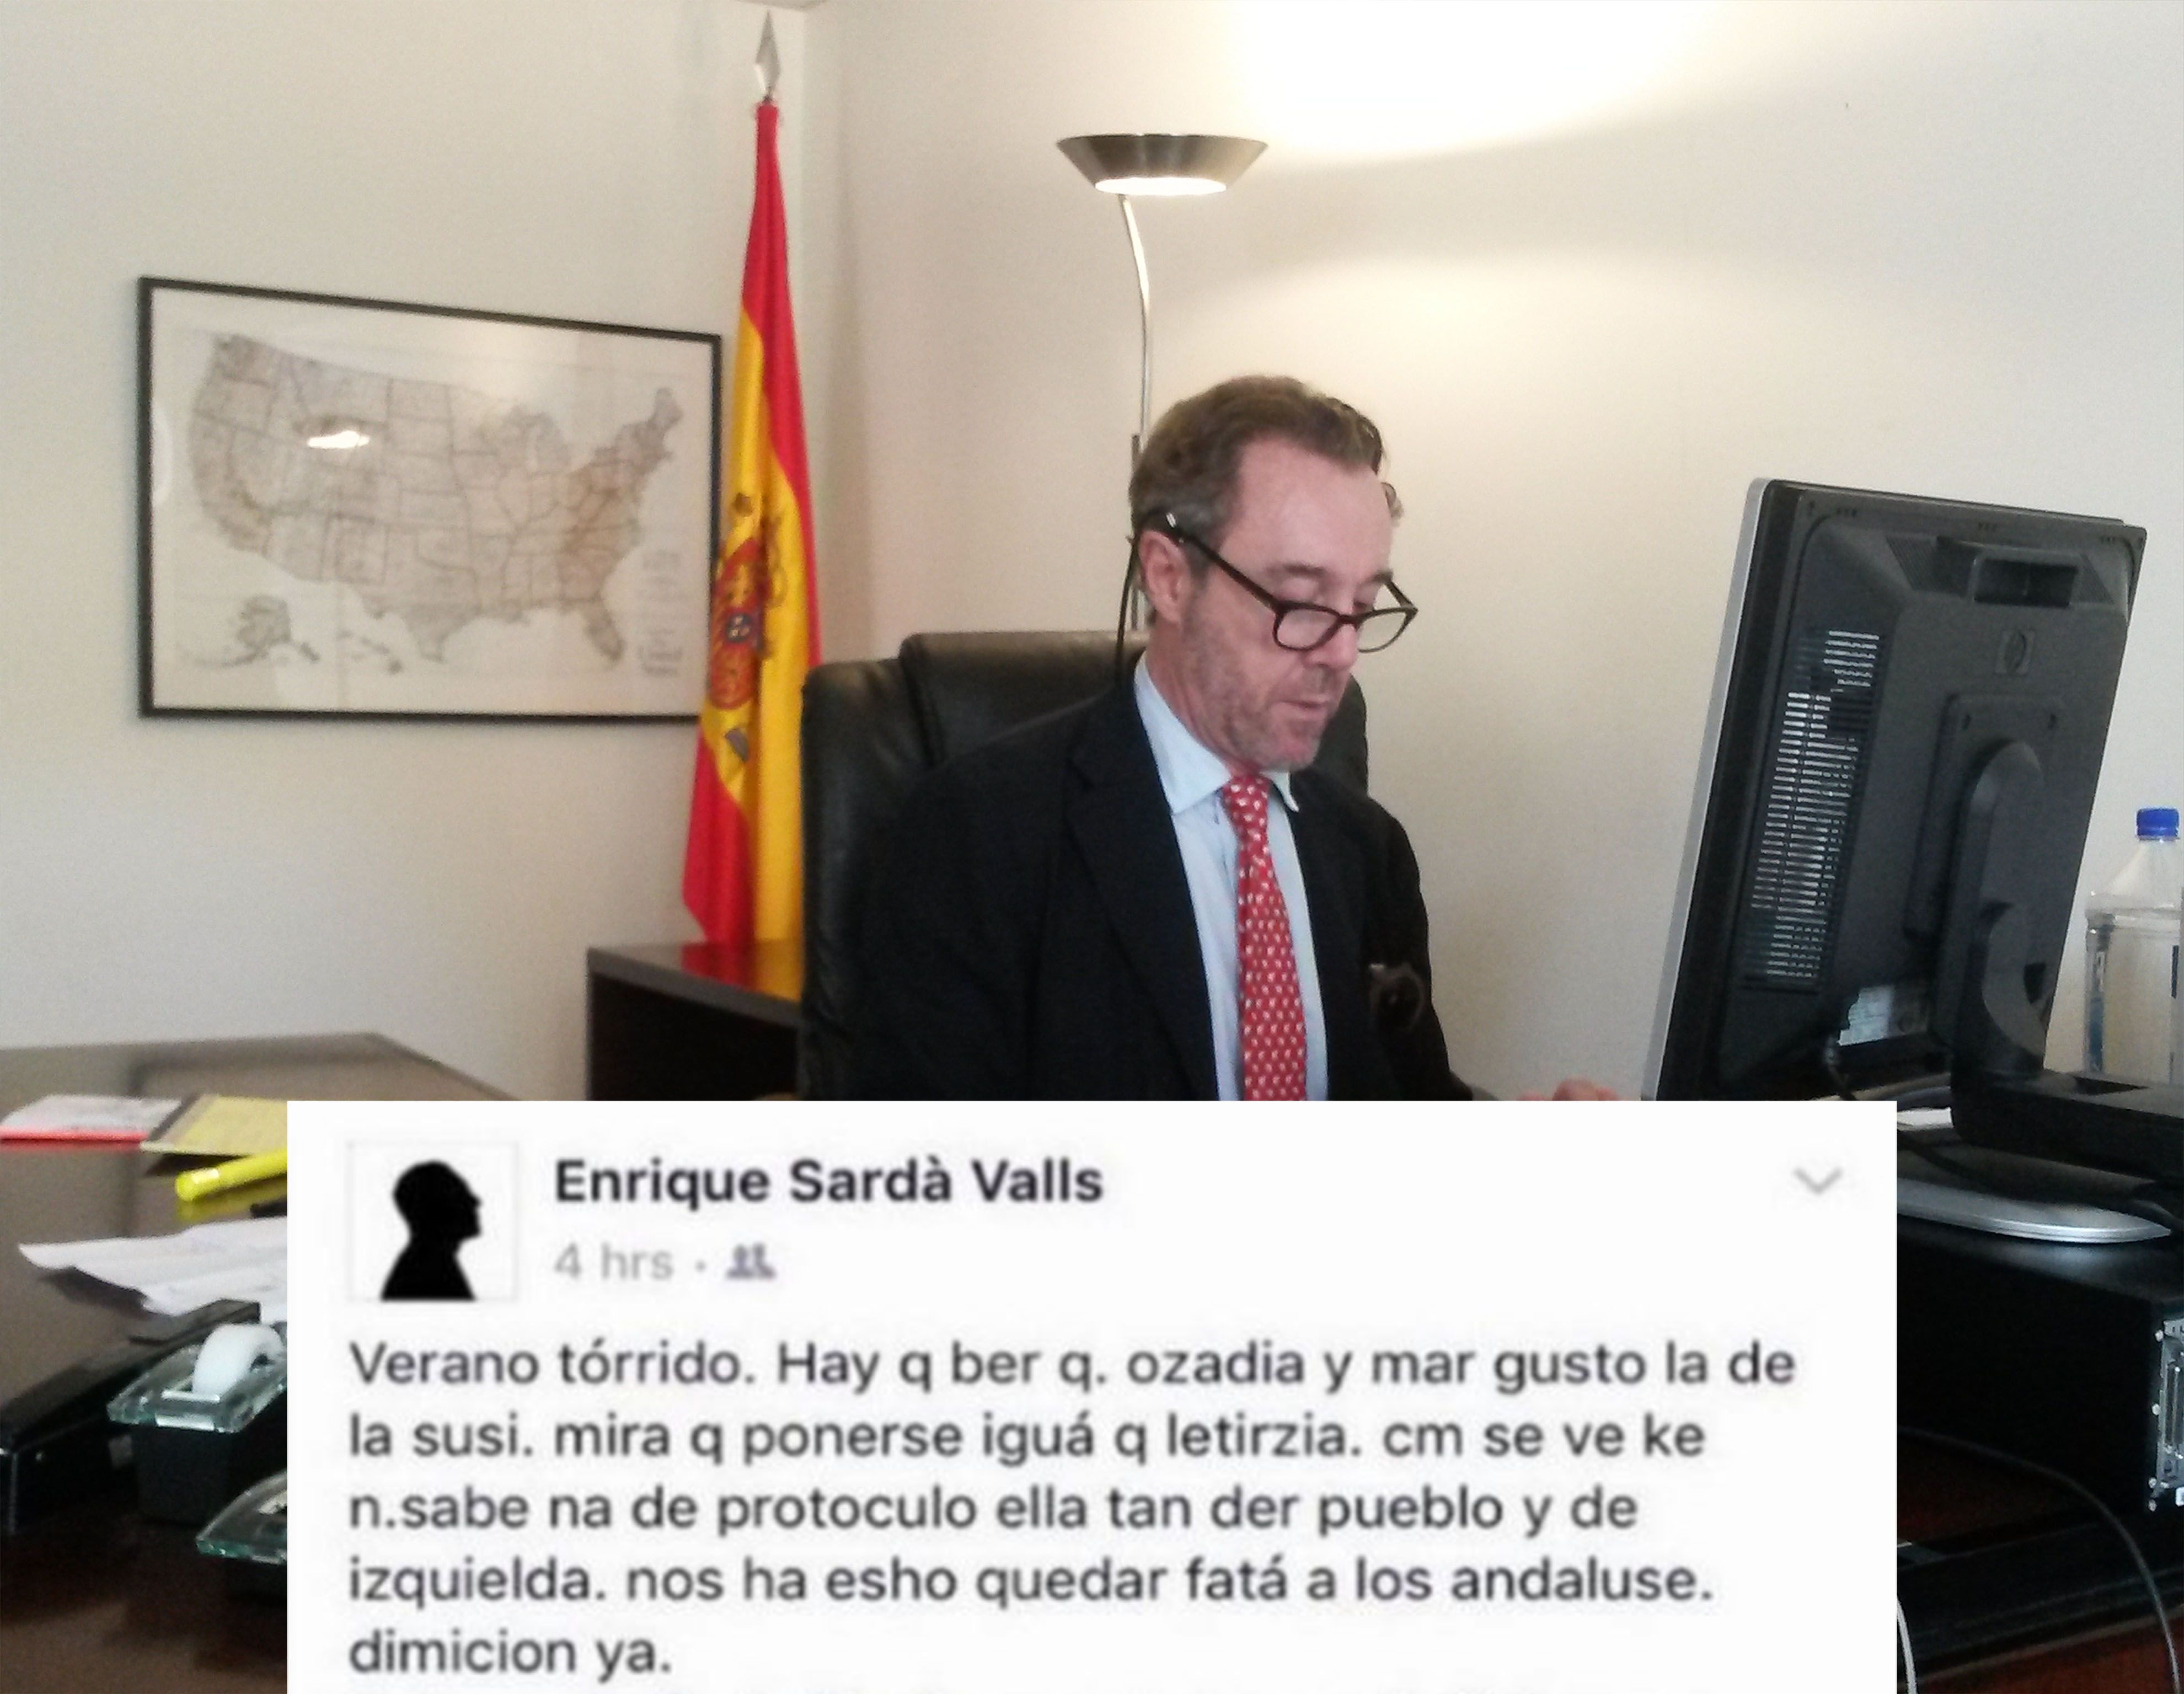 consul_espanol_mofa_acento_andaluz.jpg